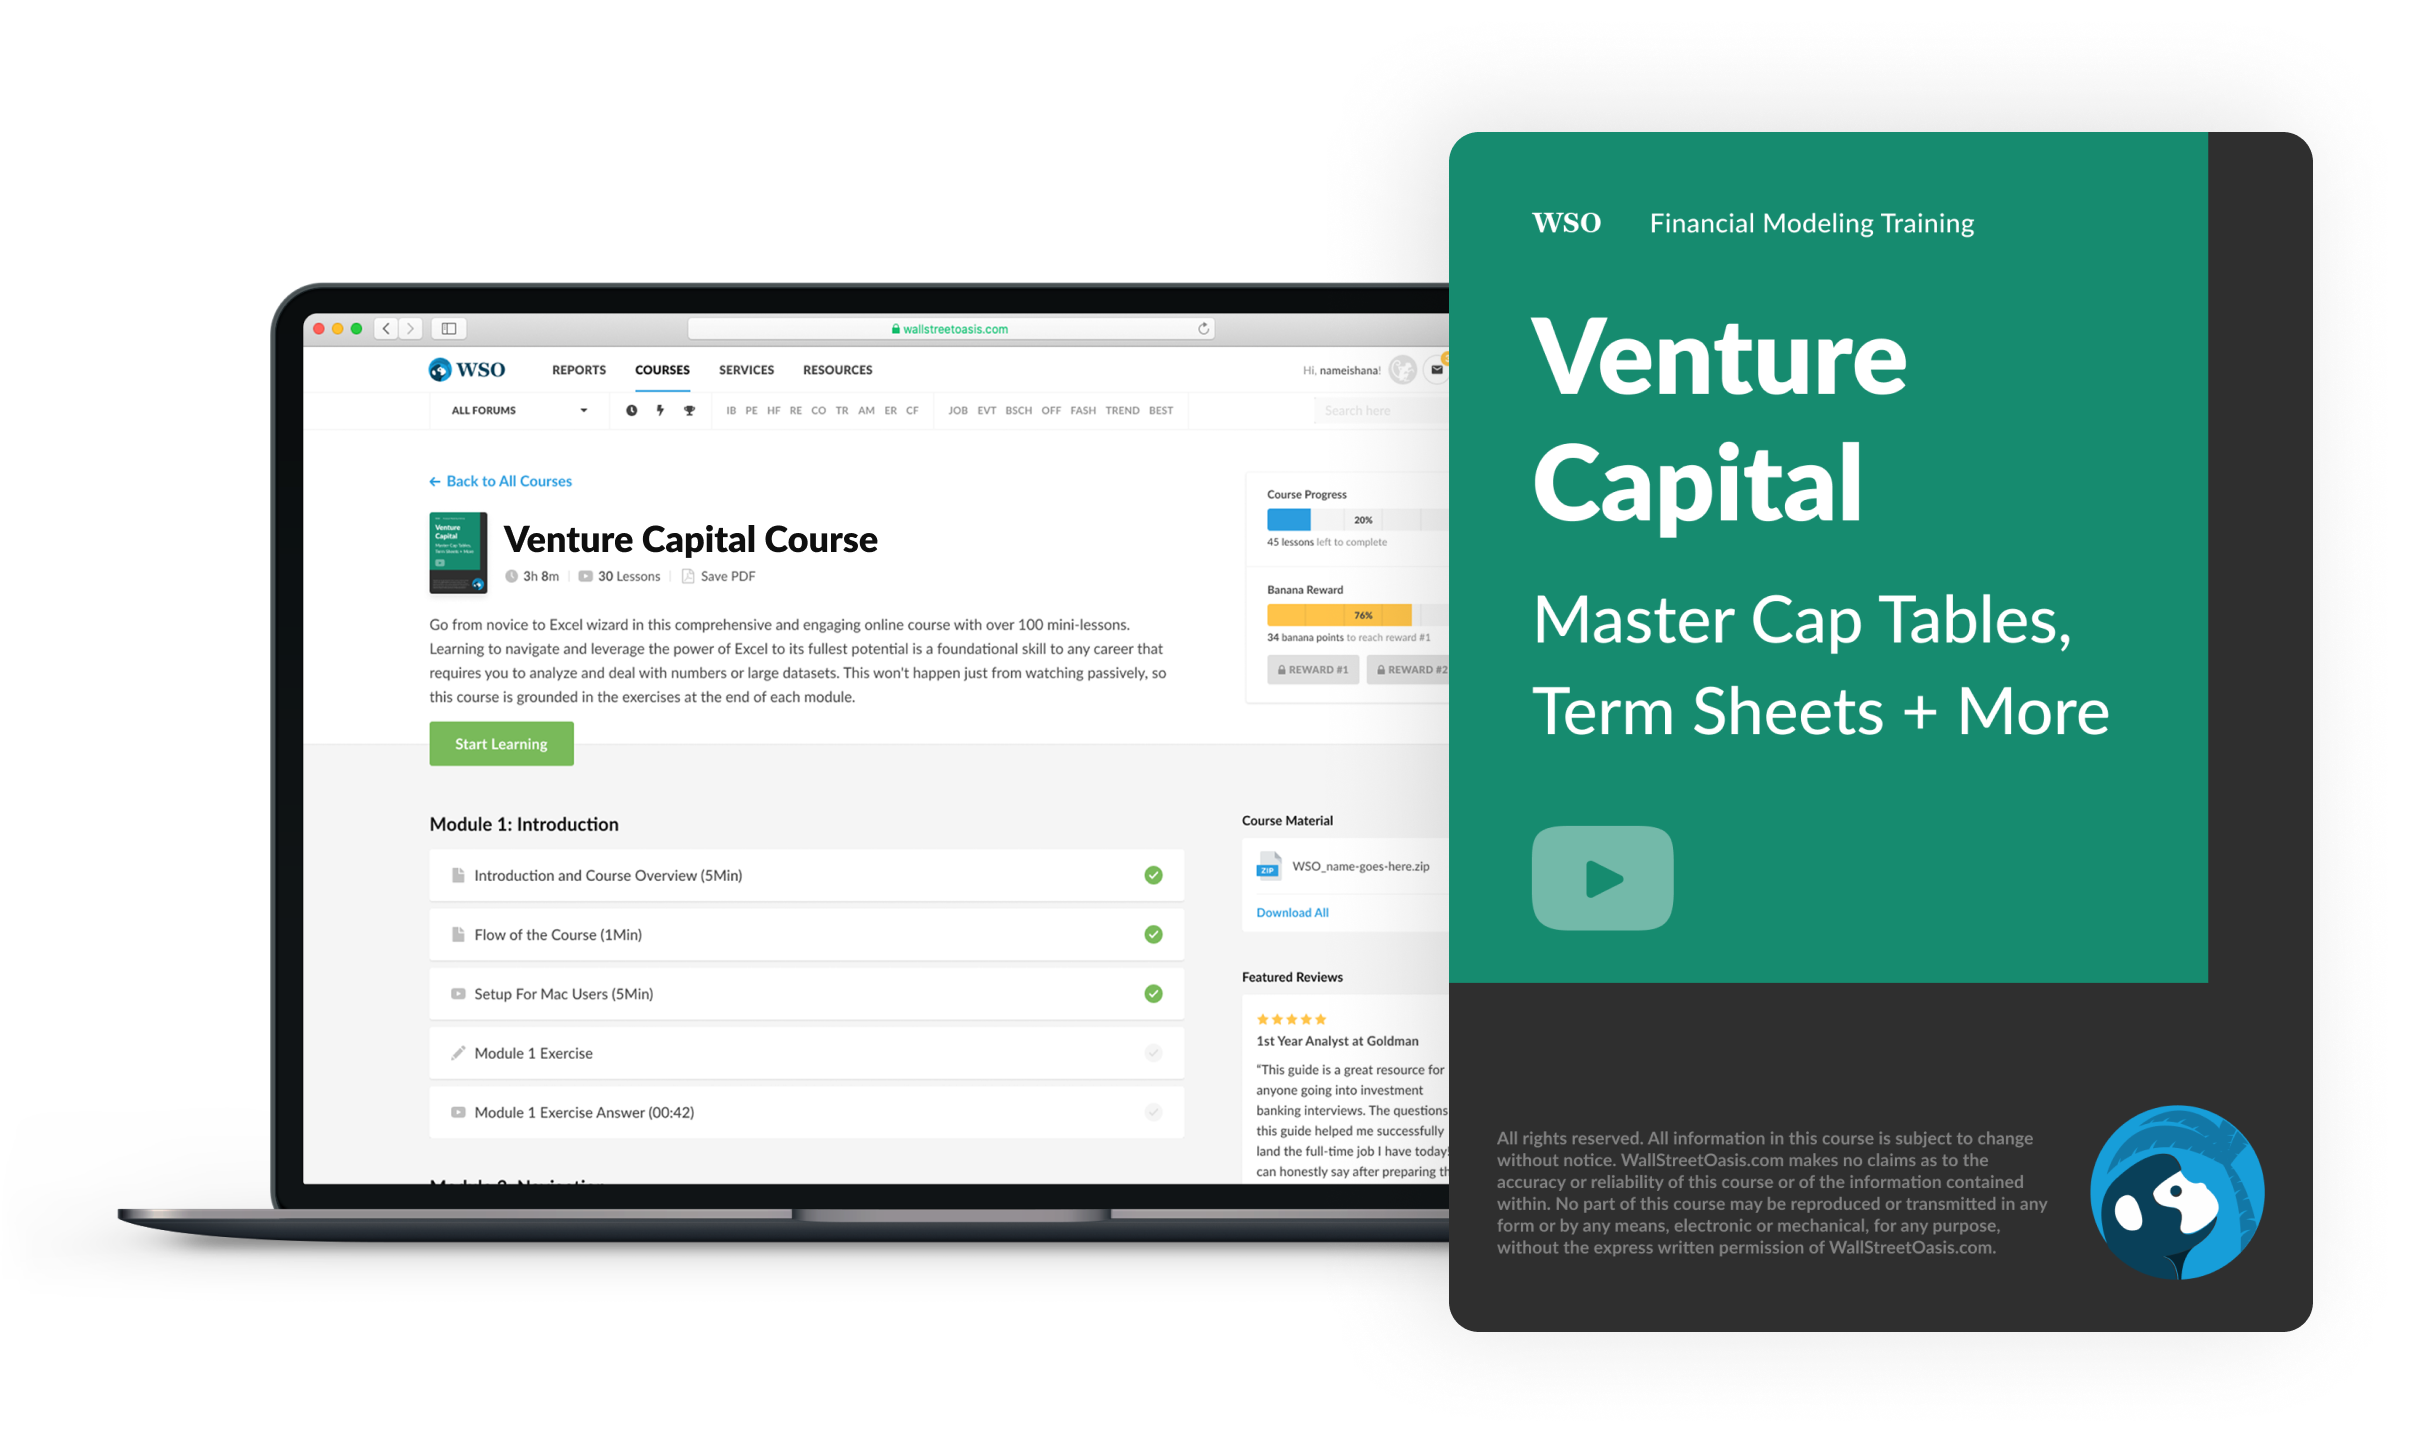 Venture Capital Course